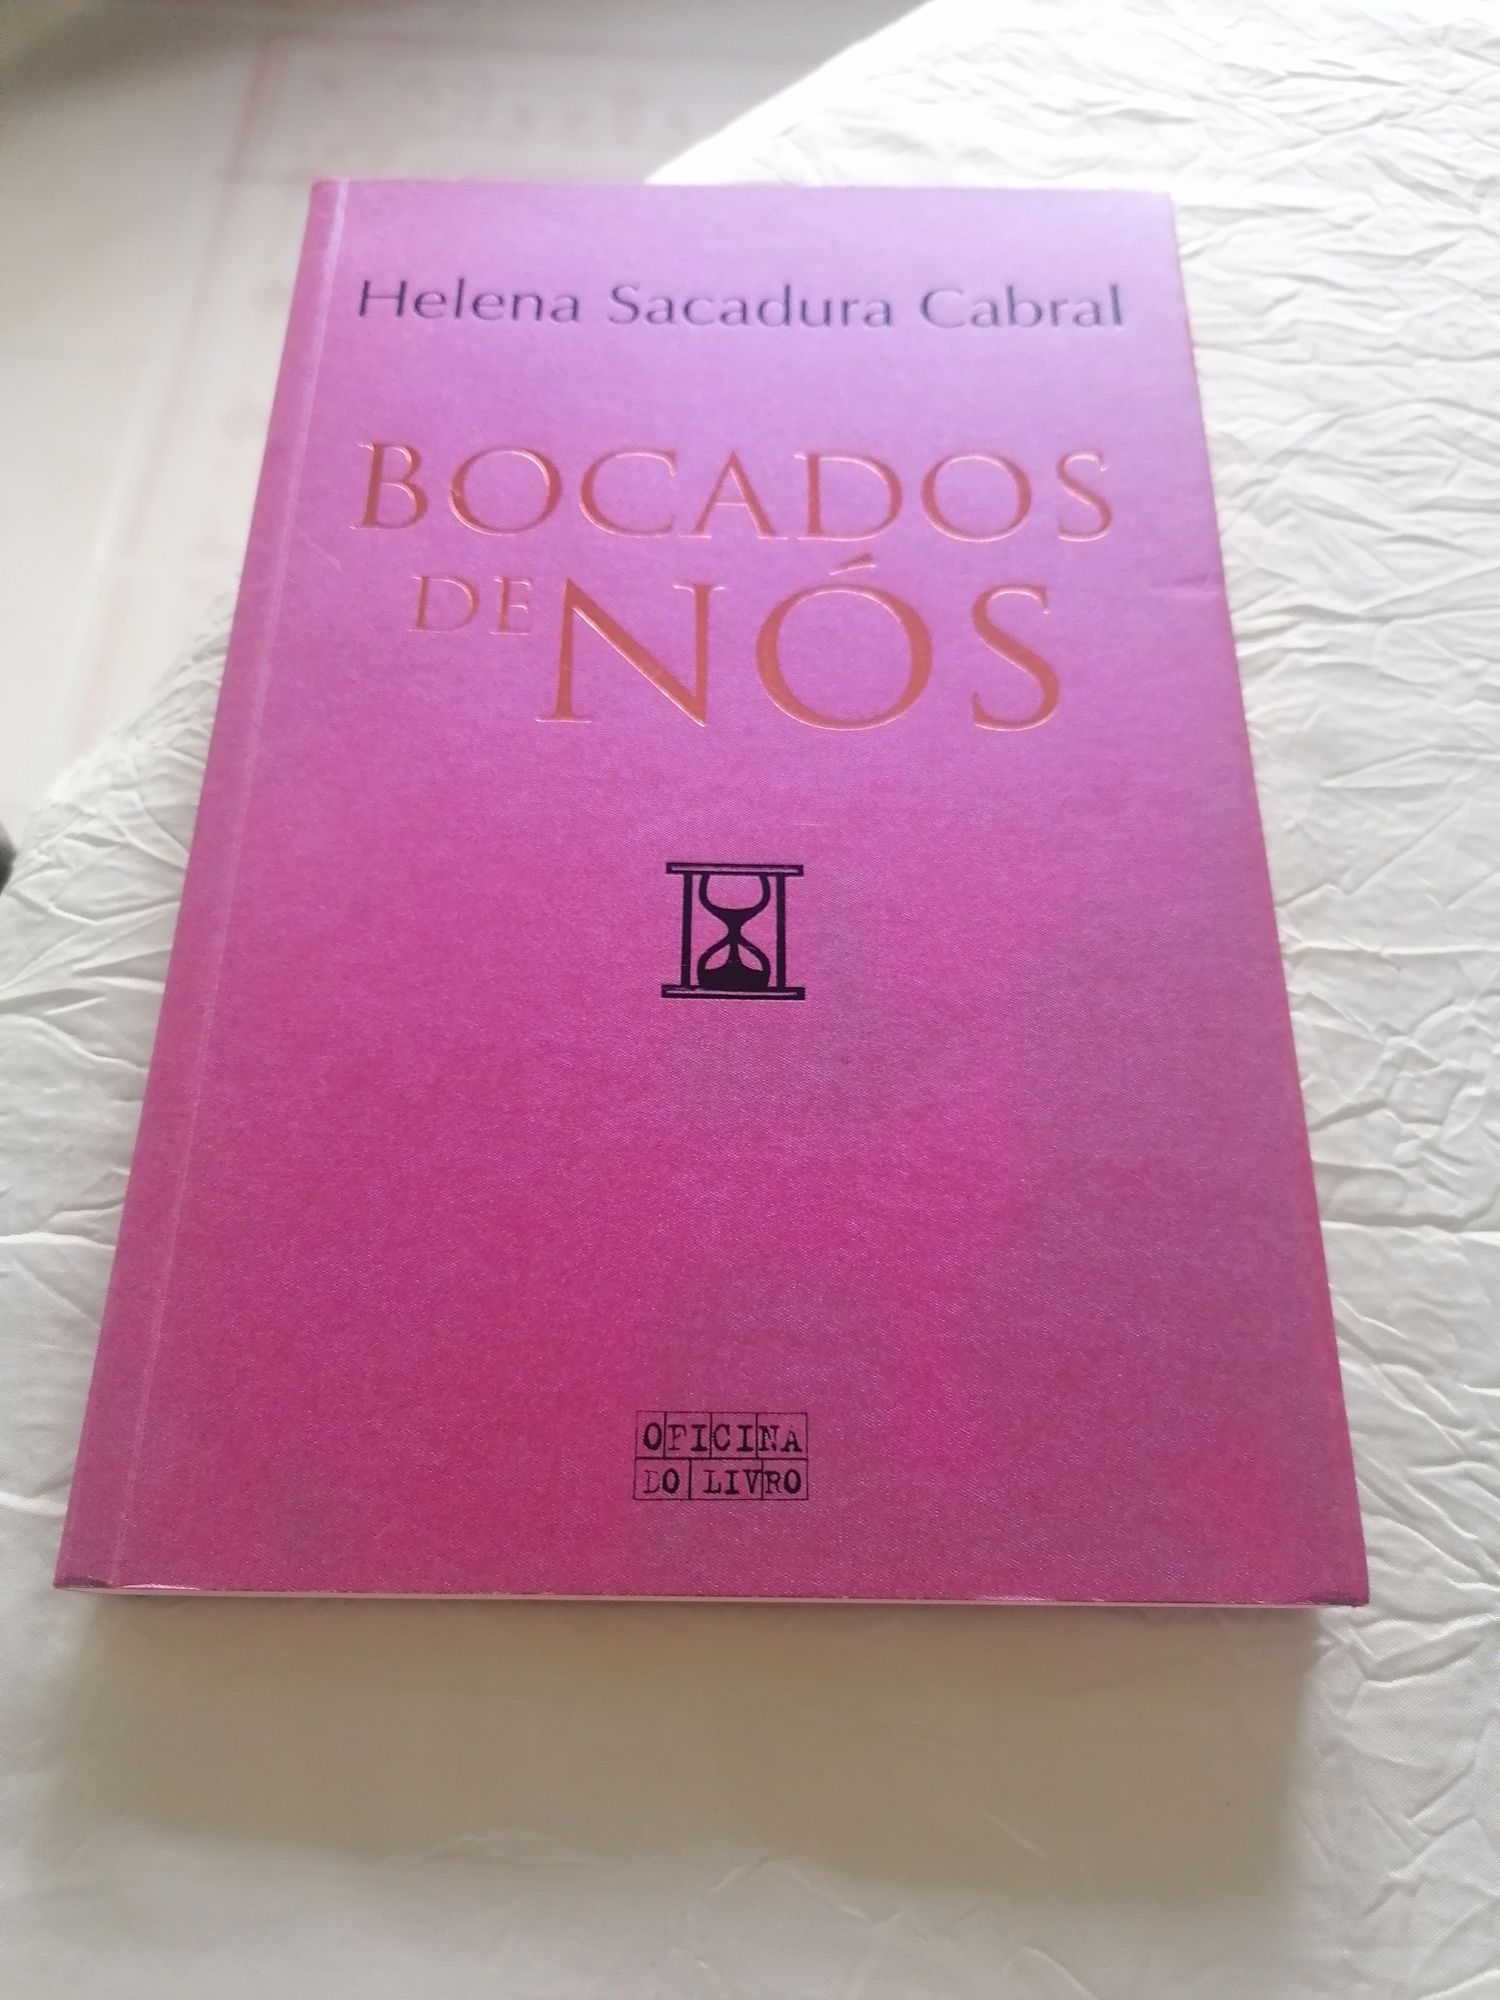 Livro "Bocado de mim" de Helena Sacadura Cabral.